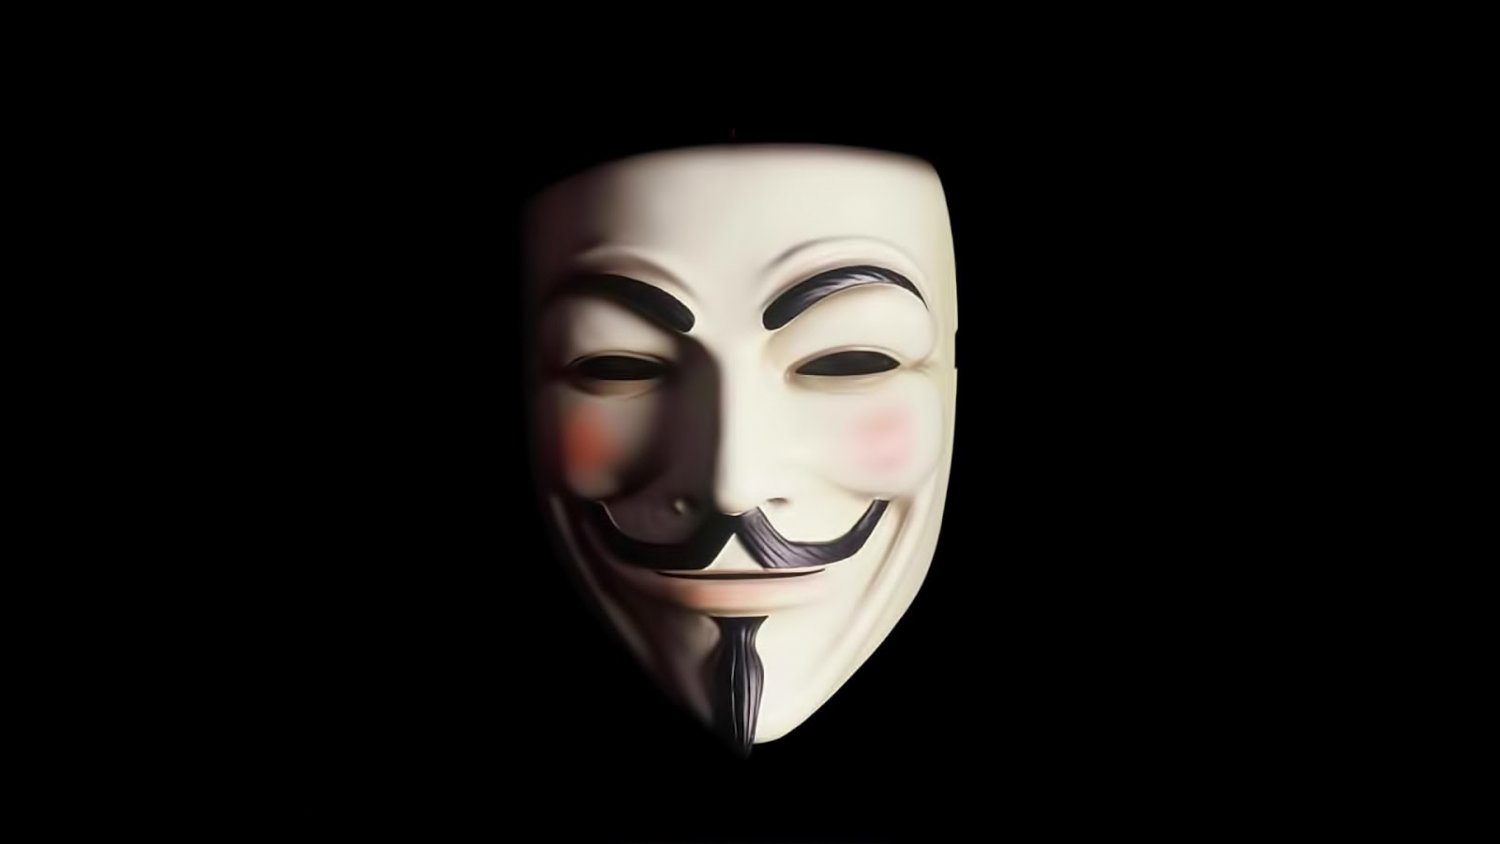 vendetta-guy-fawkes-mask-on-black-849146-1500x844.jpg